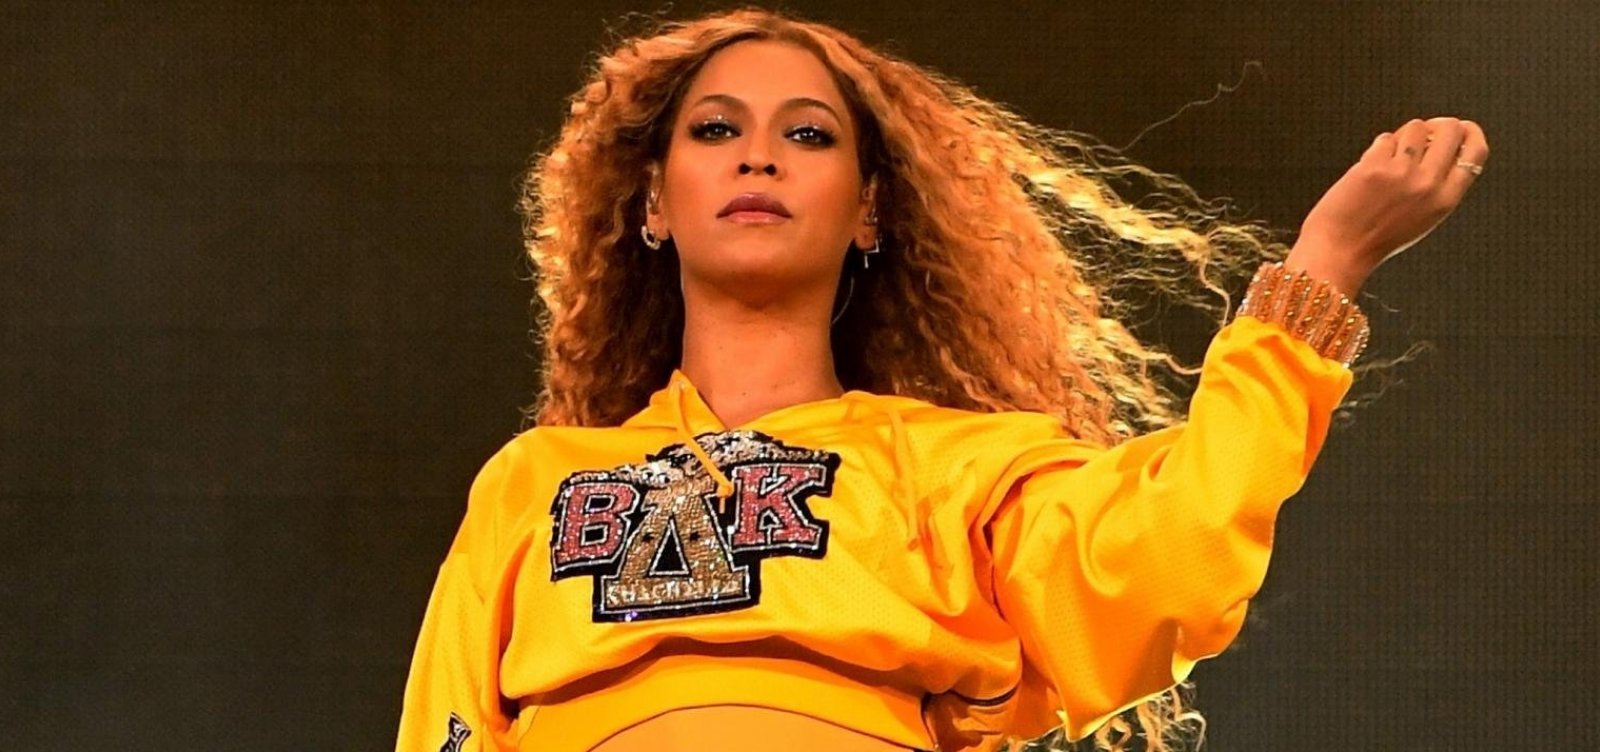 Billboard consagra Beyoncé como a “maior popstar do século”